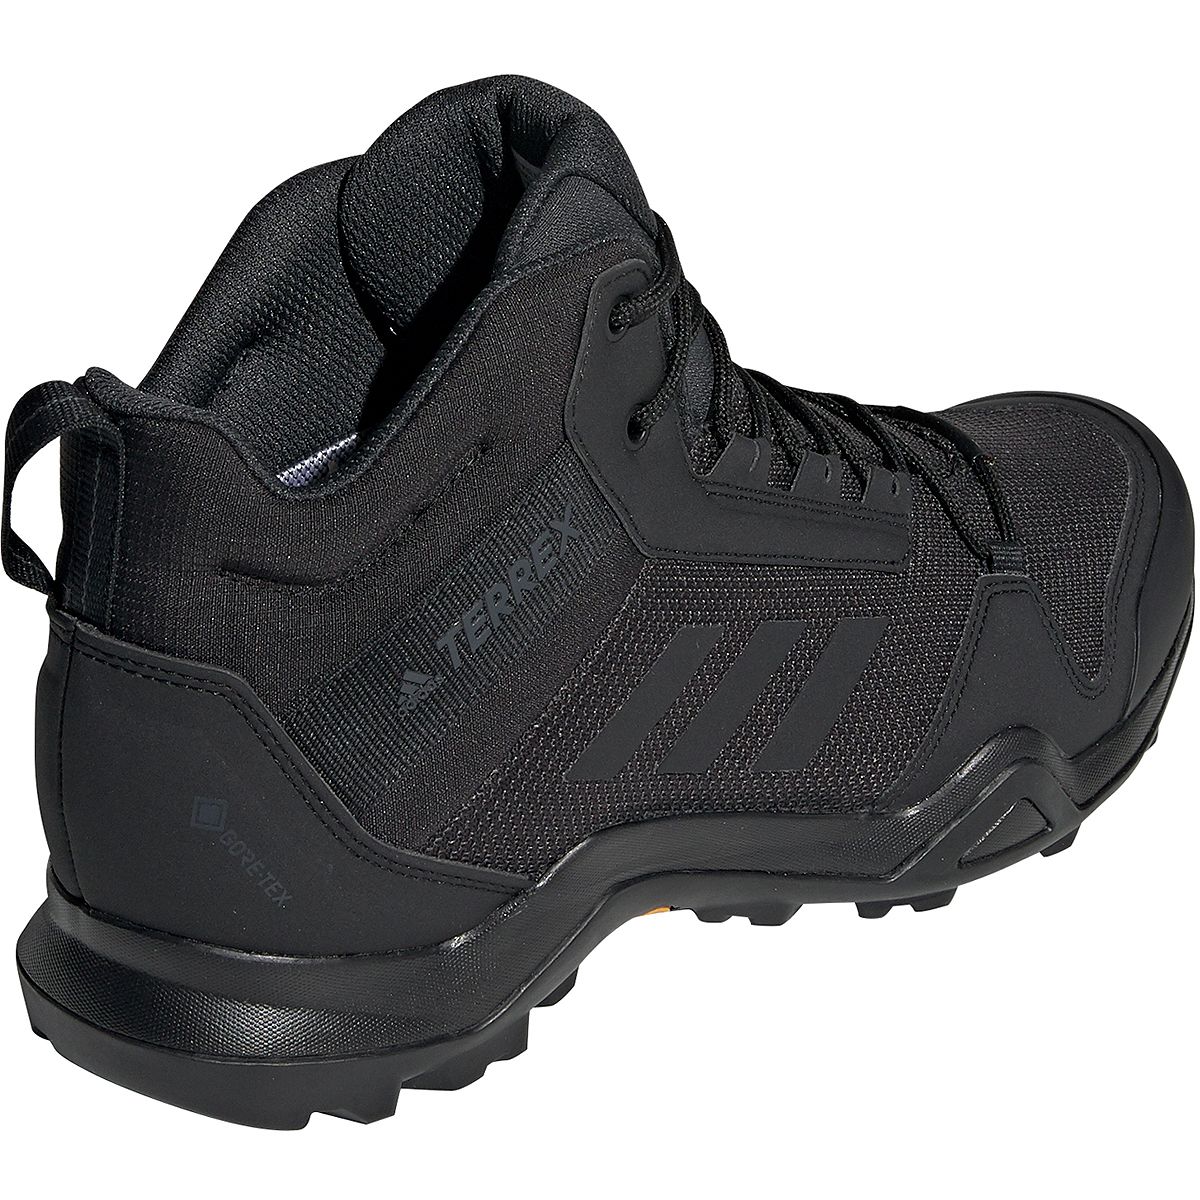 adidas outdoor terrex ax3 mid gtx hiking boot